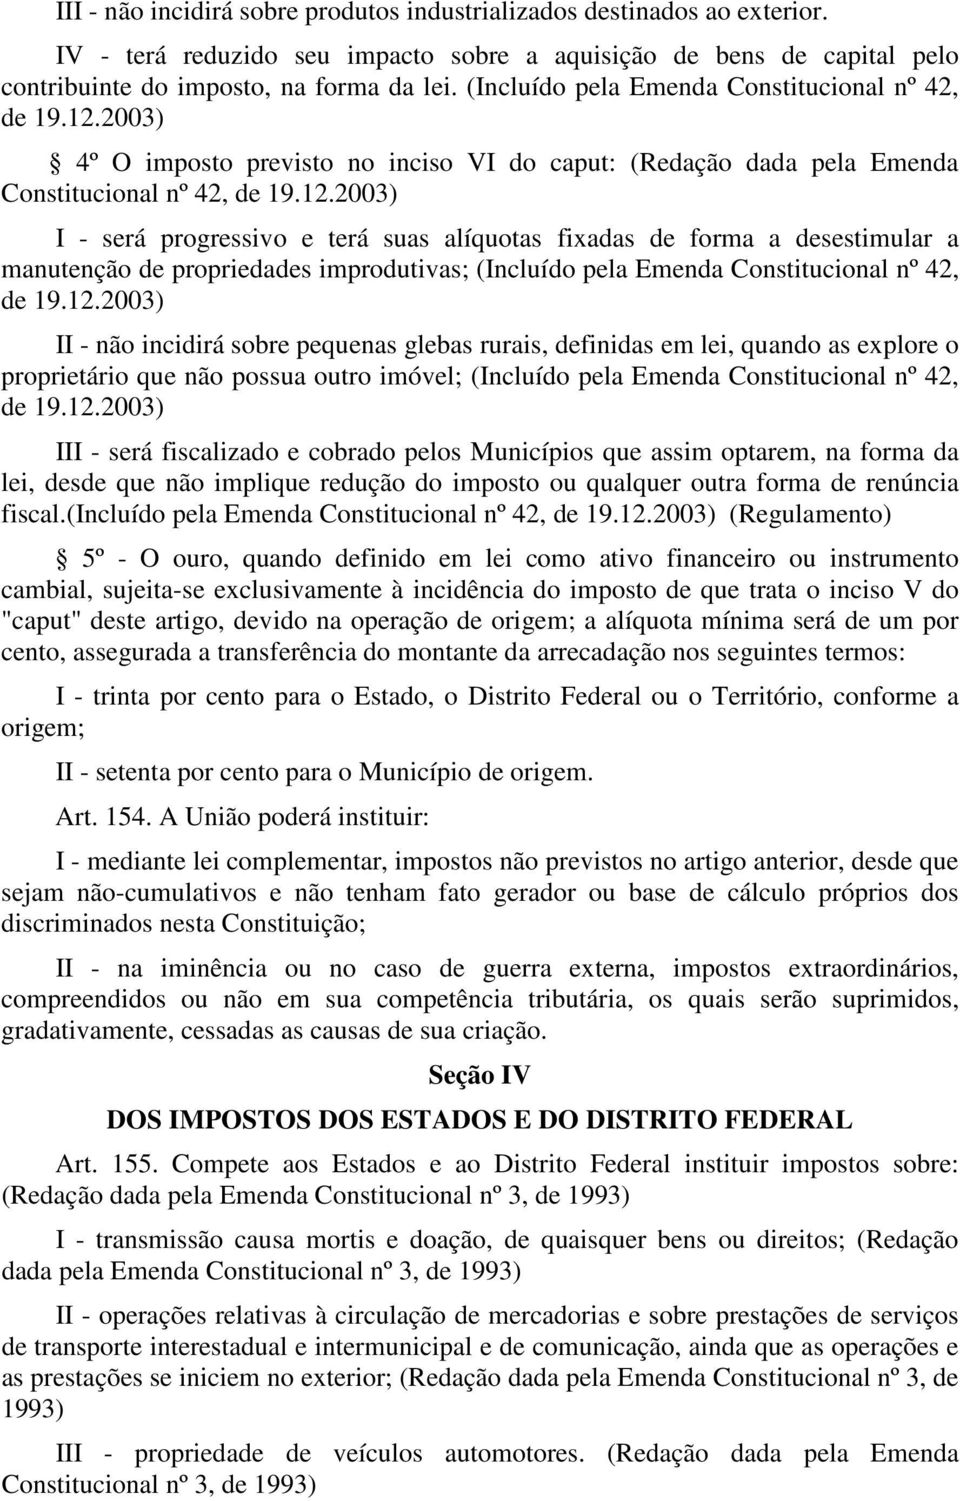 2003) 4º O imposto previsto no inciso VI do caput: (Redação dada pela Emenda Constitucional nº 42, de 19.12.